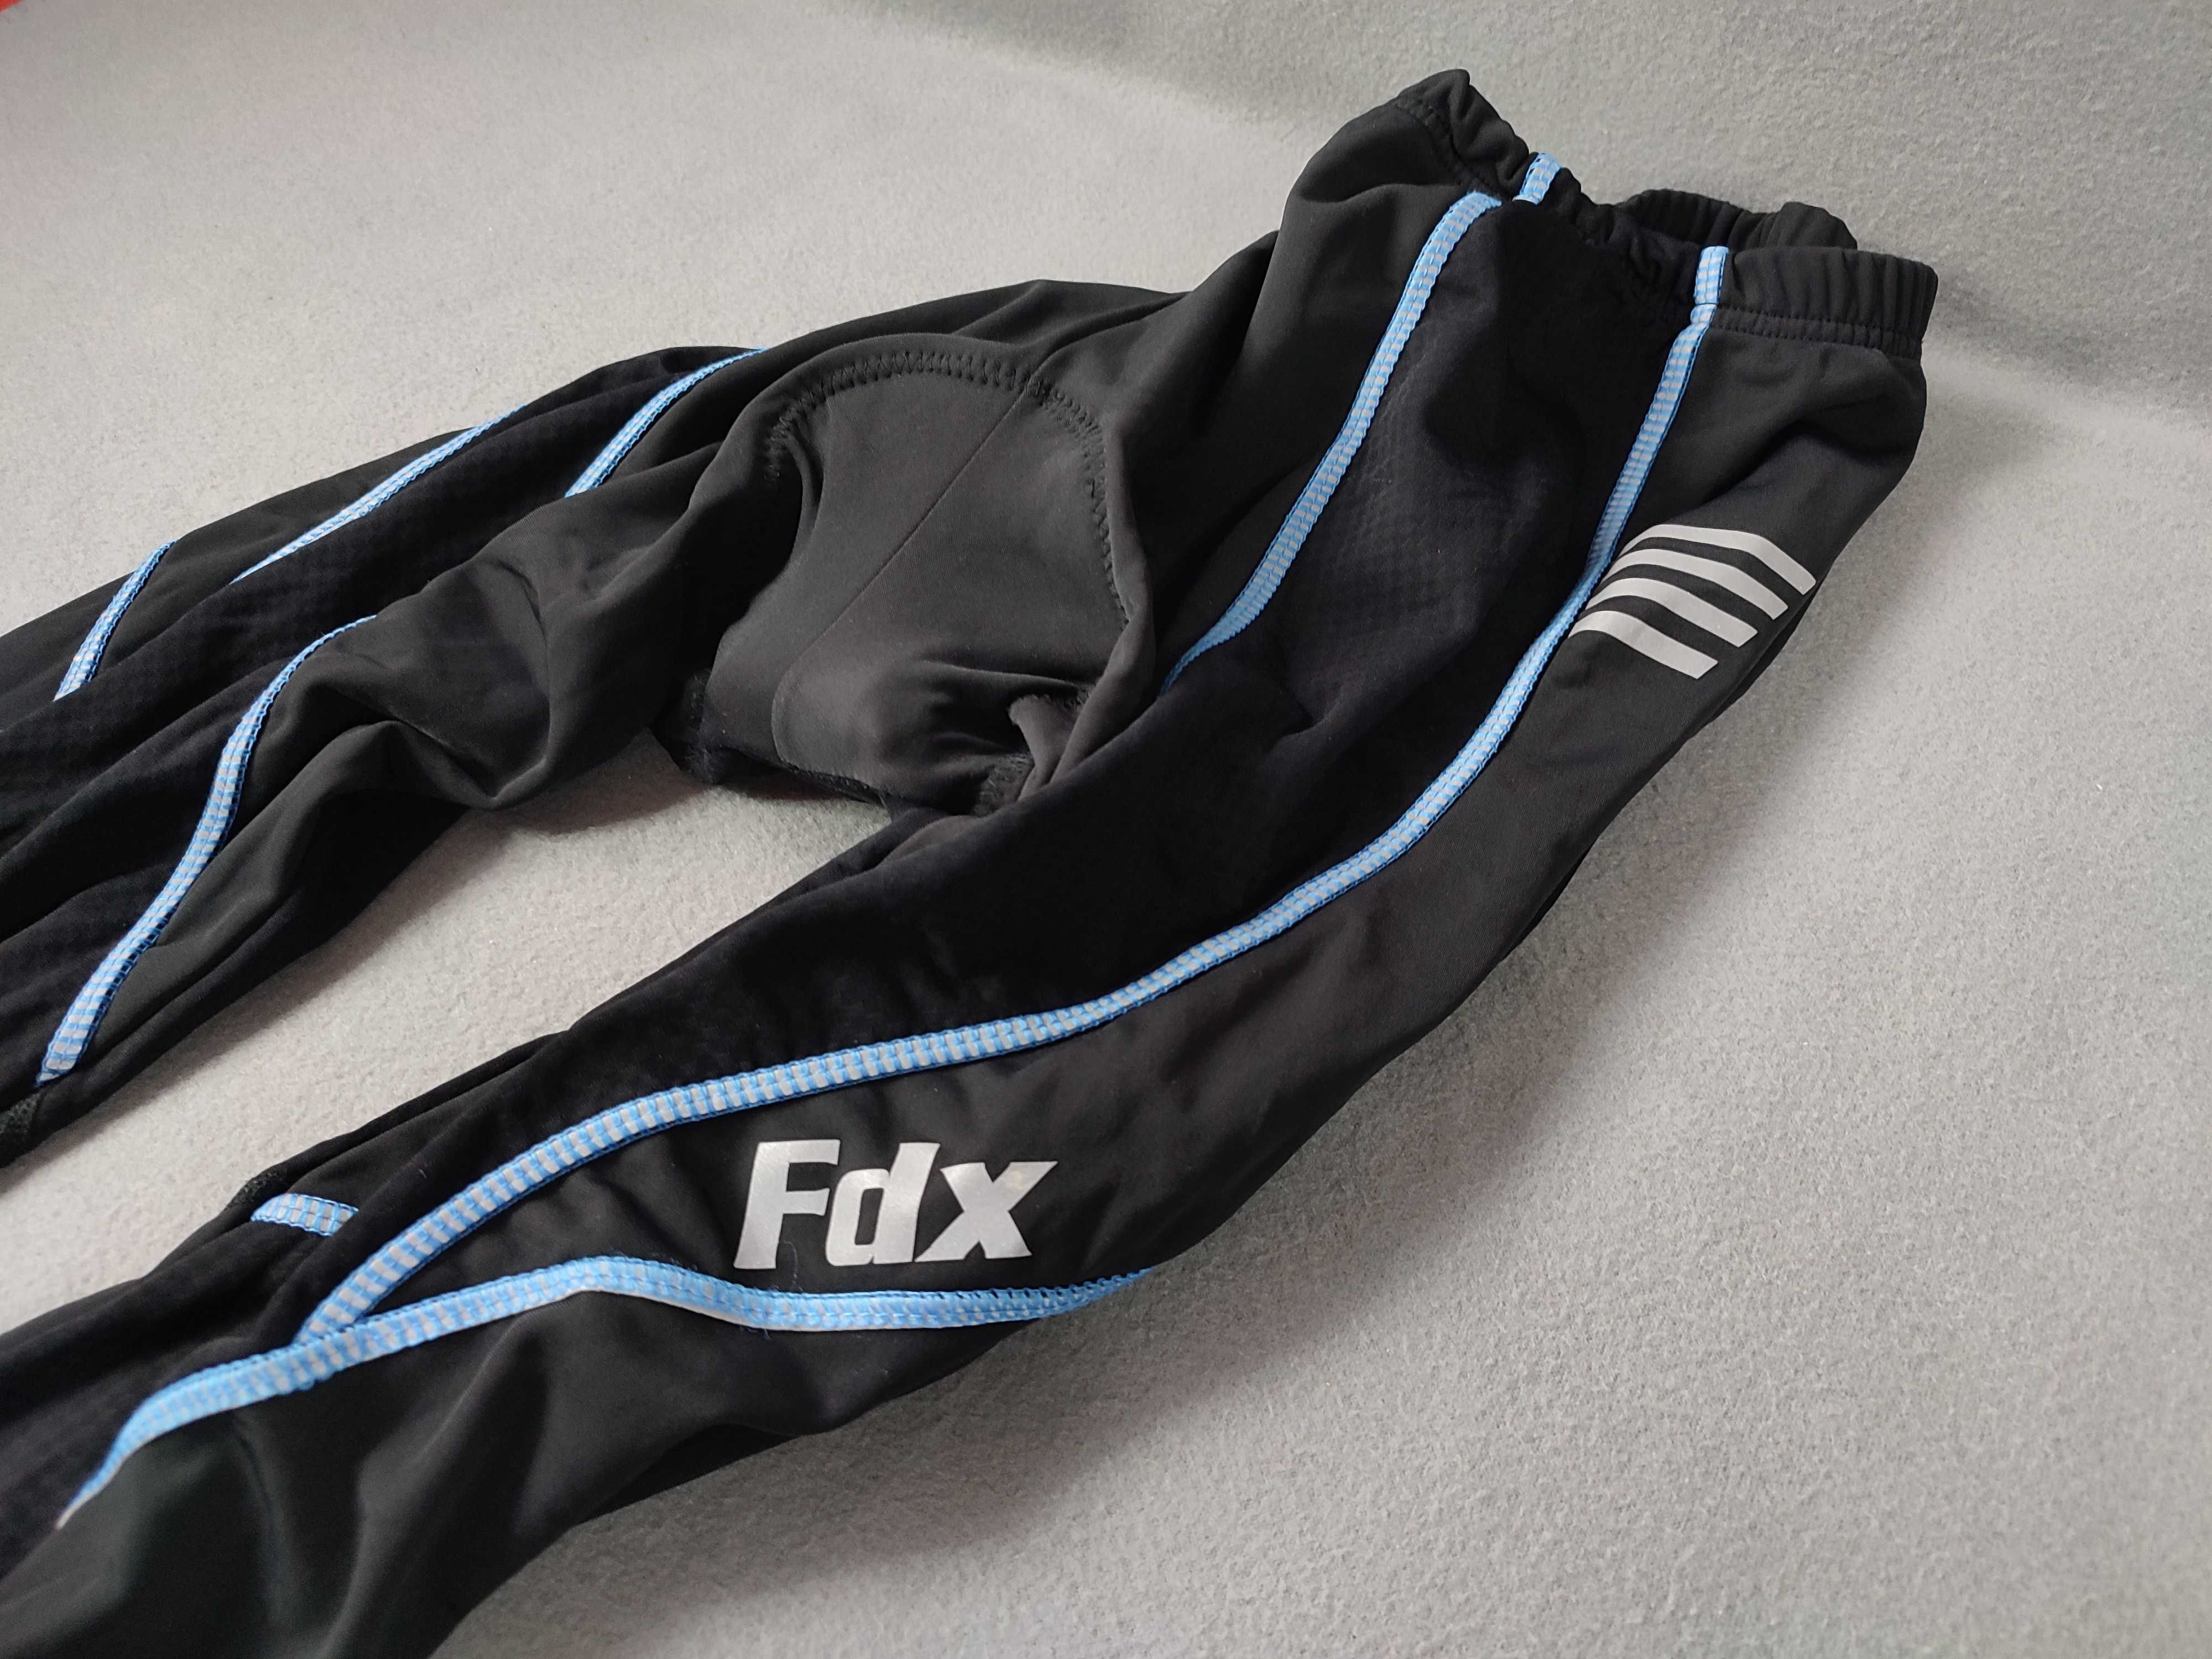 Велоштаны Fdx на флисе, велосипедные штаны, XL